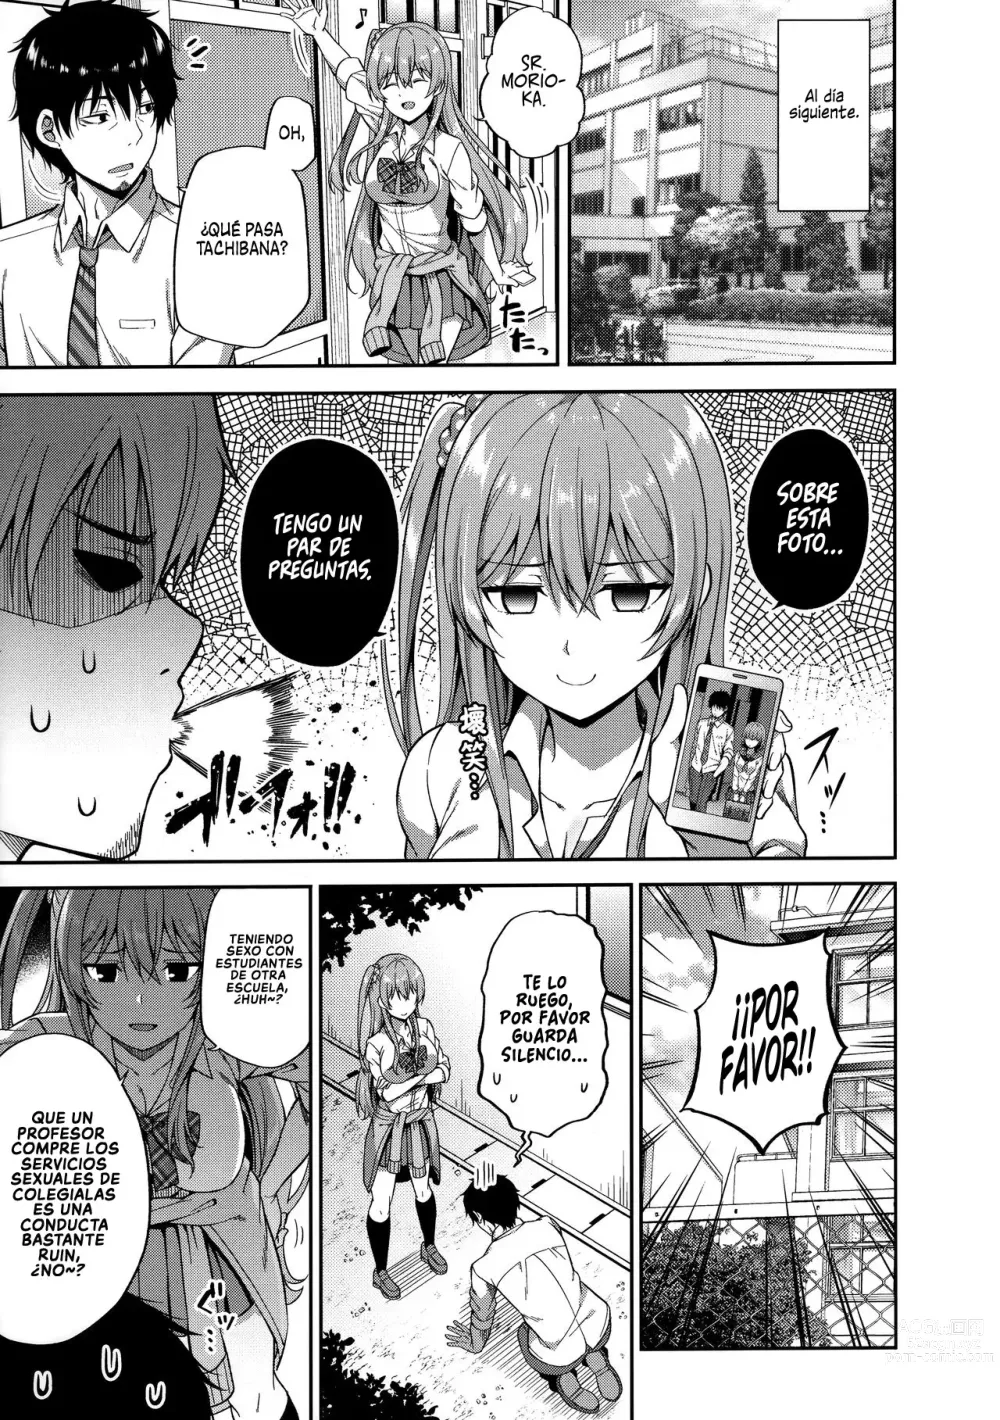 Page 7 of doujinshi ¿Te gustan las chicas que tienen citas compensadas?